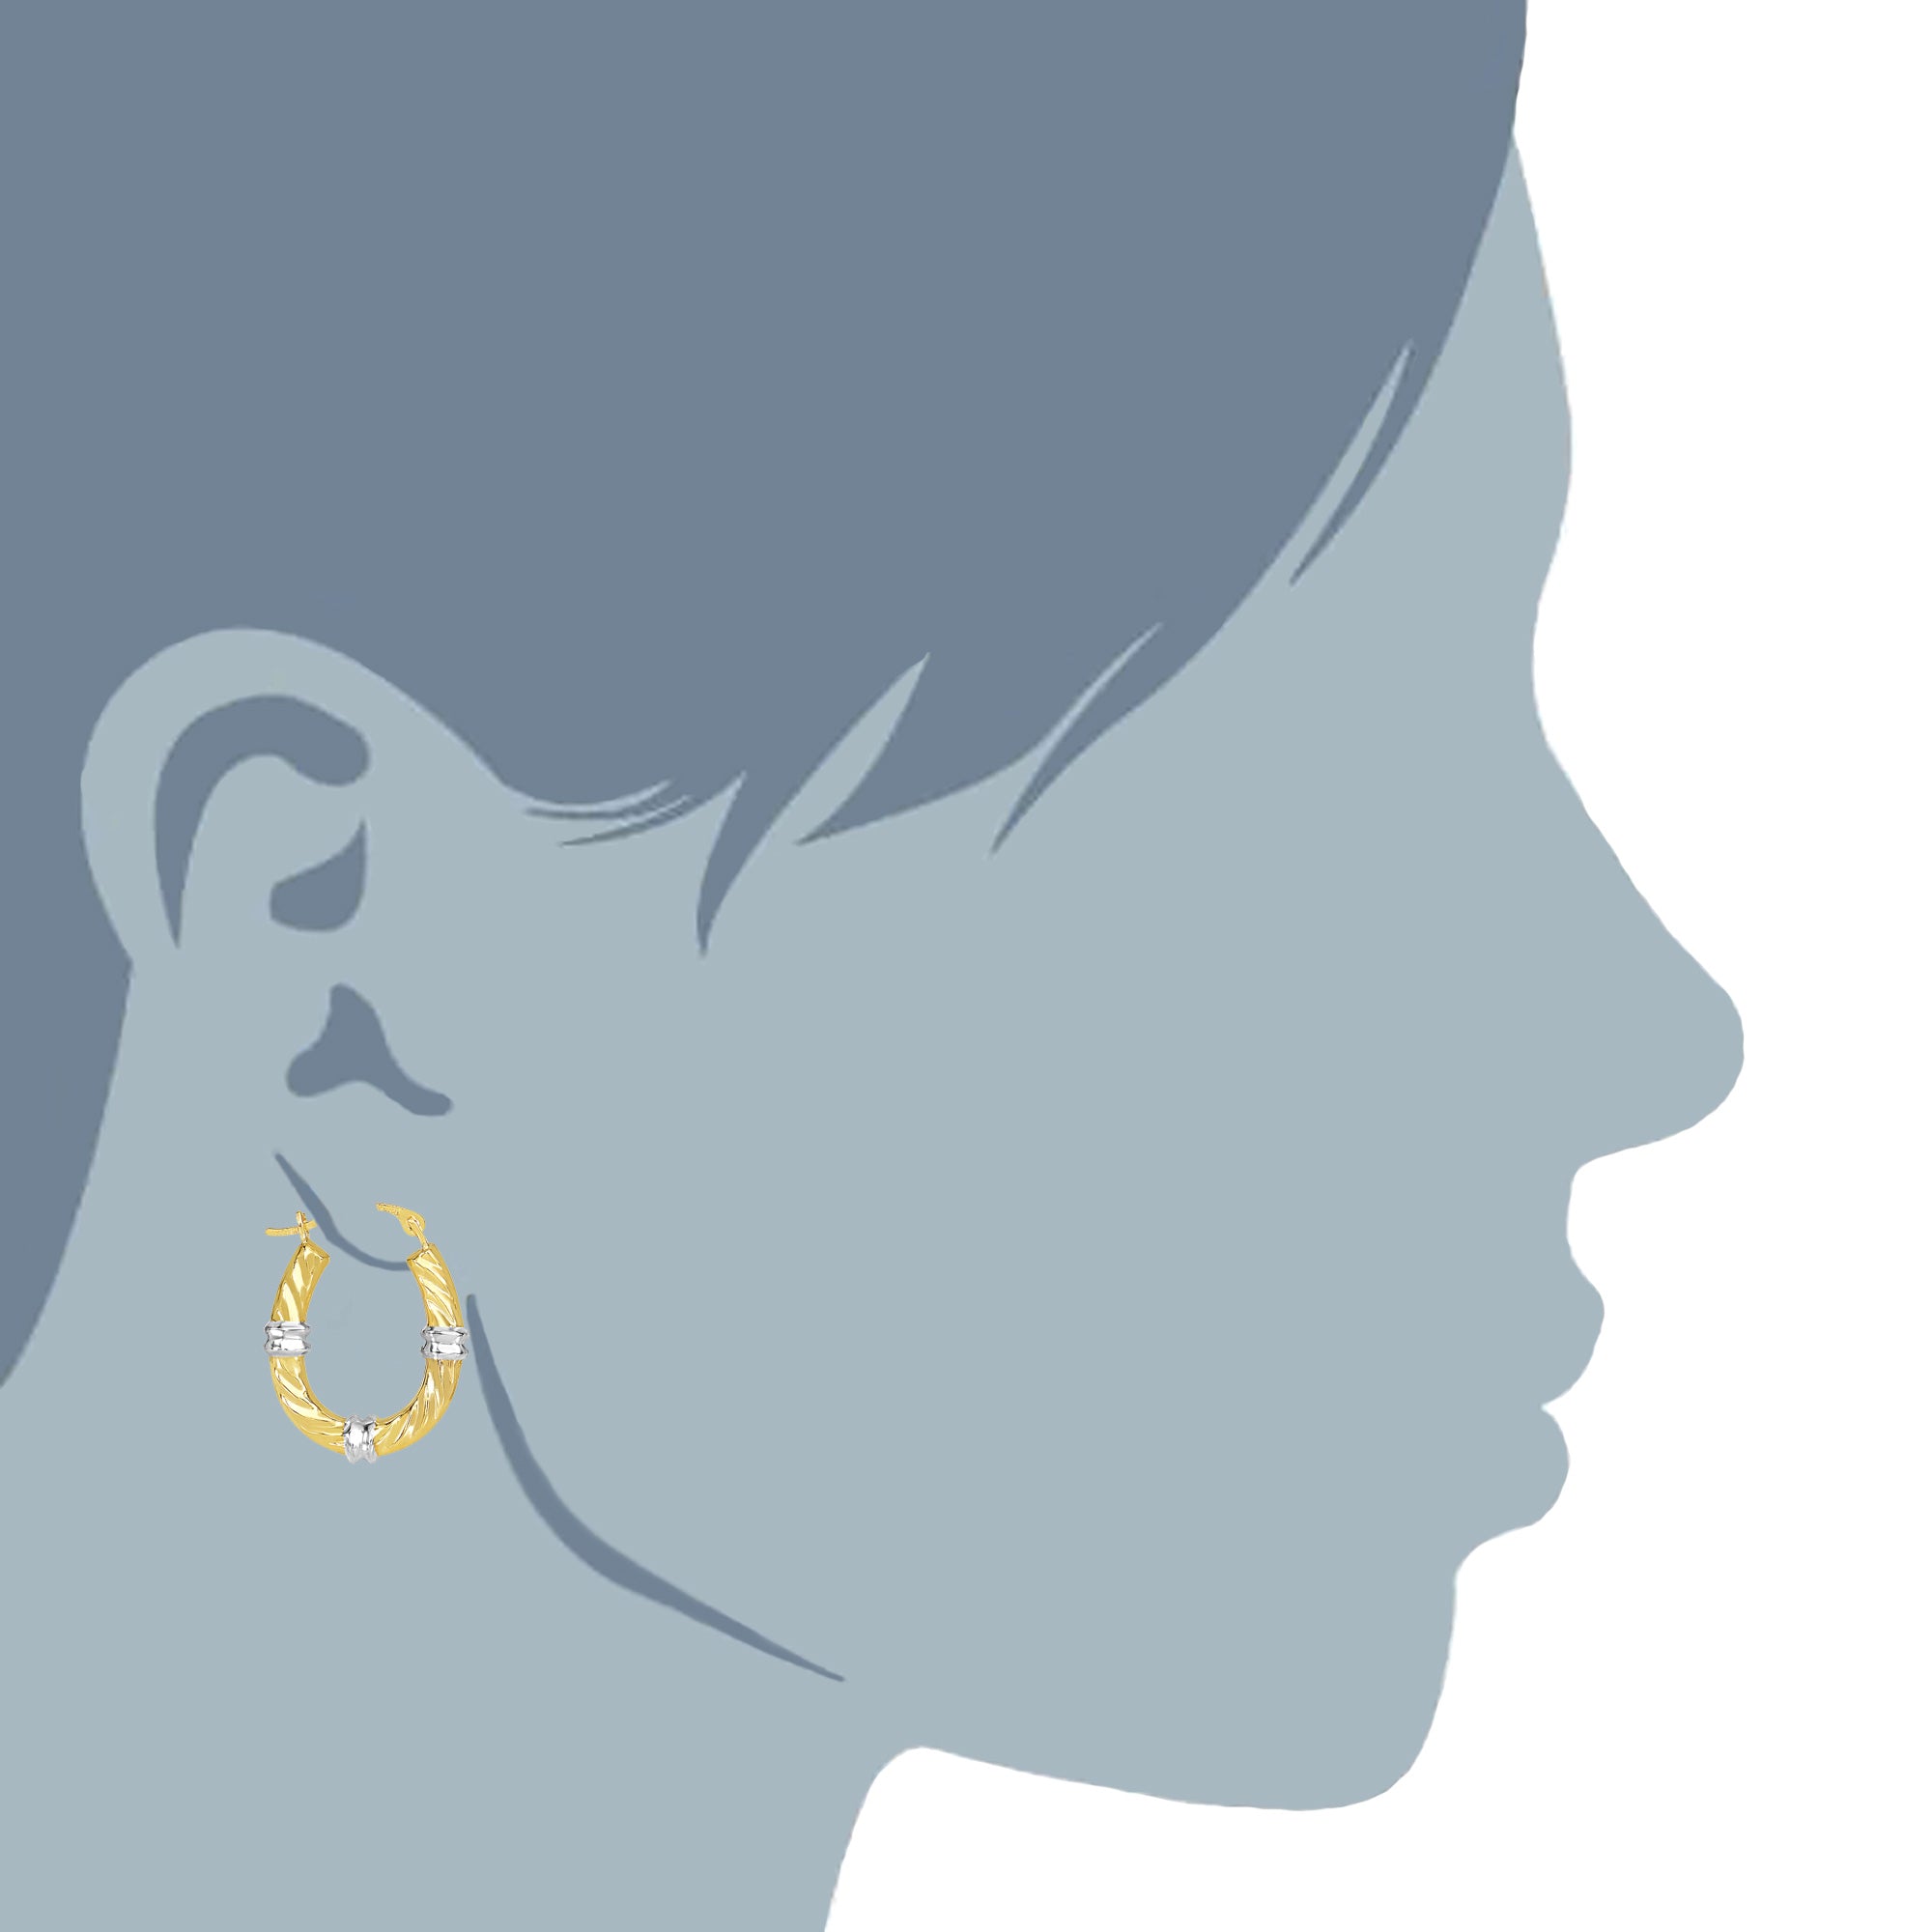 10k 2 tone hvid og gul guld swirl tekstur ovale bøjle øreringe, diameter 20 mm fine designer smykker til mænd og kvinder